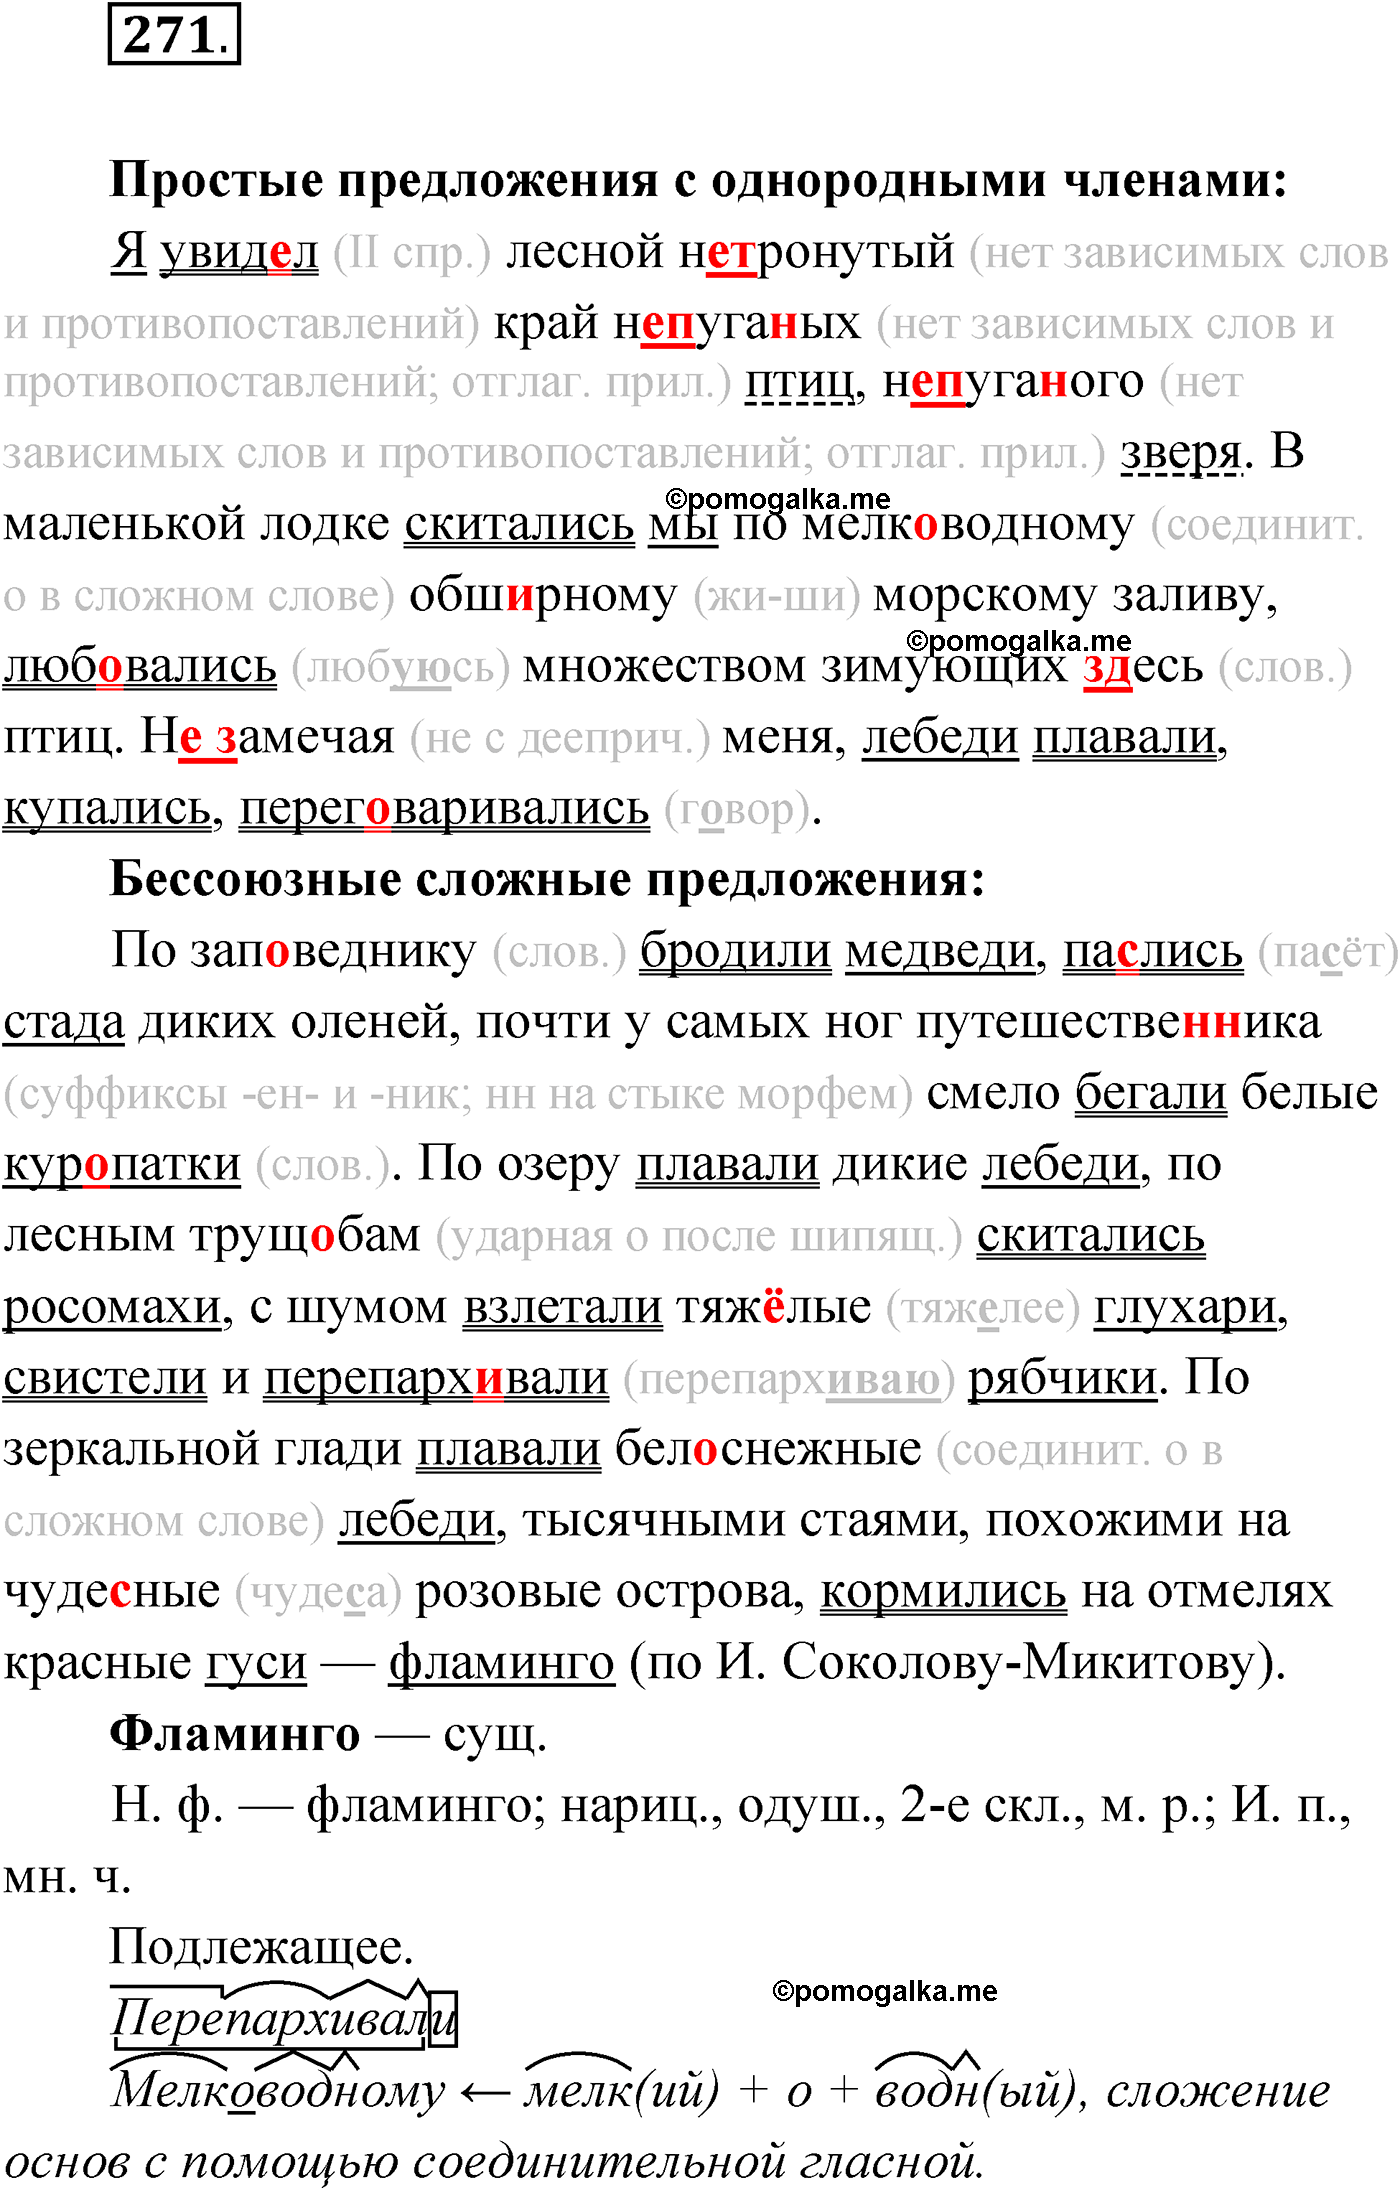 упражнение №271 русский язык 9 класс Мурина 2019 год